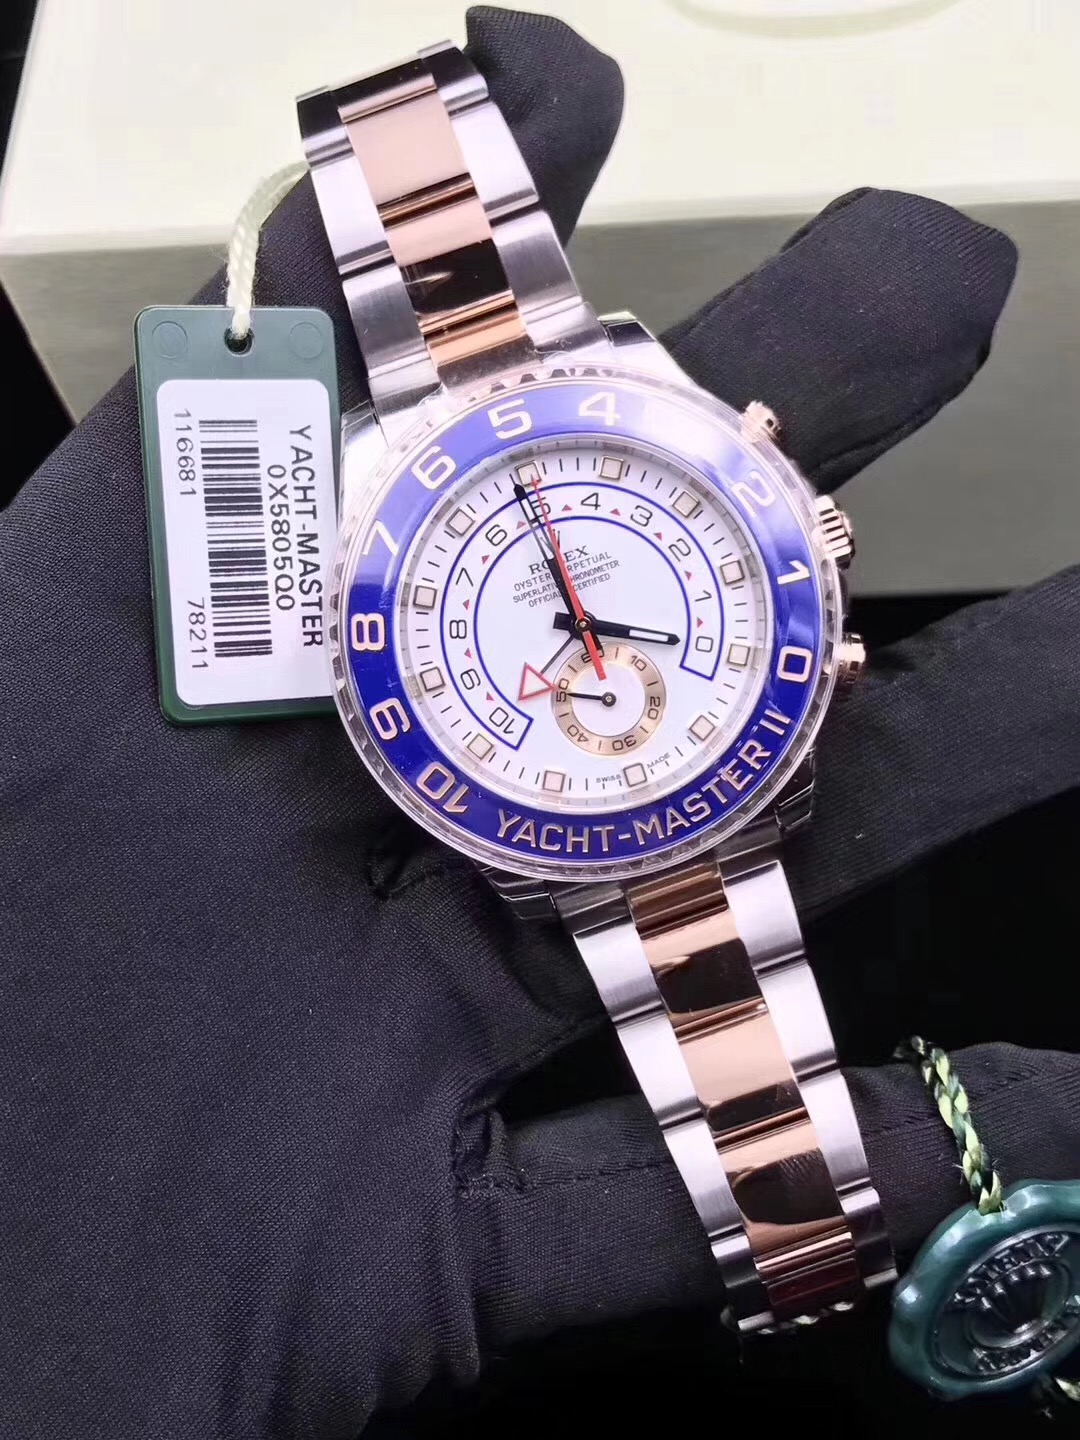 20230120094355100 - 介绍一点传统手表的基础知识